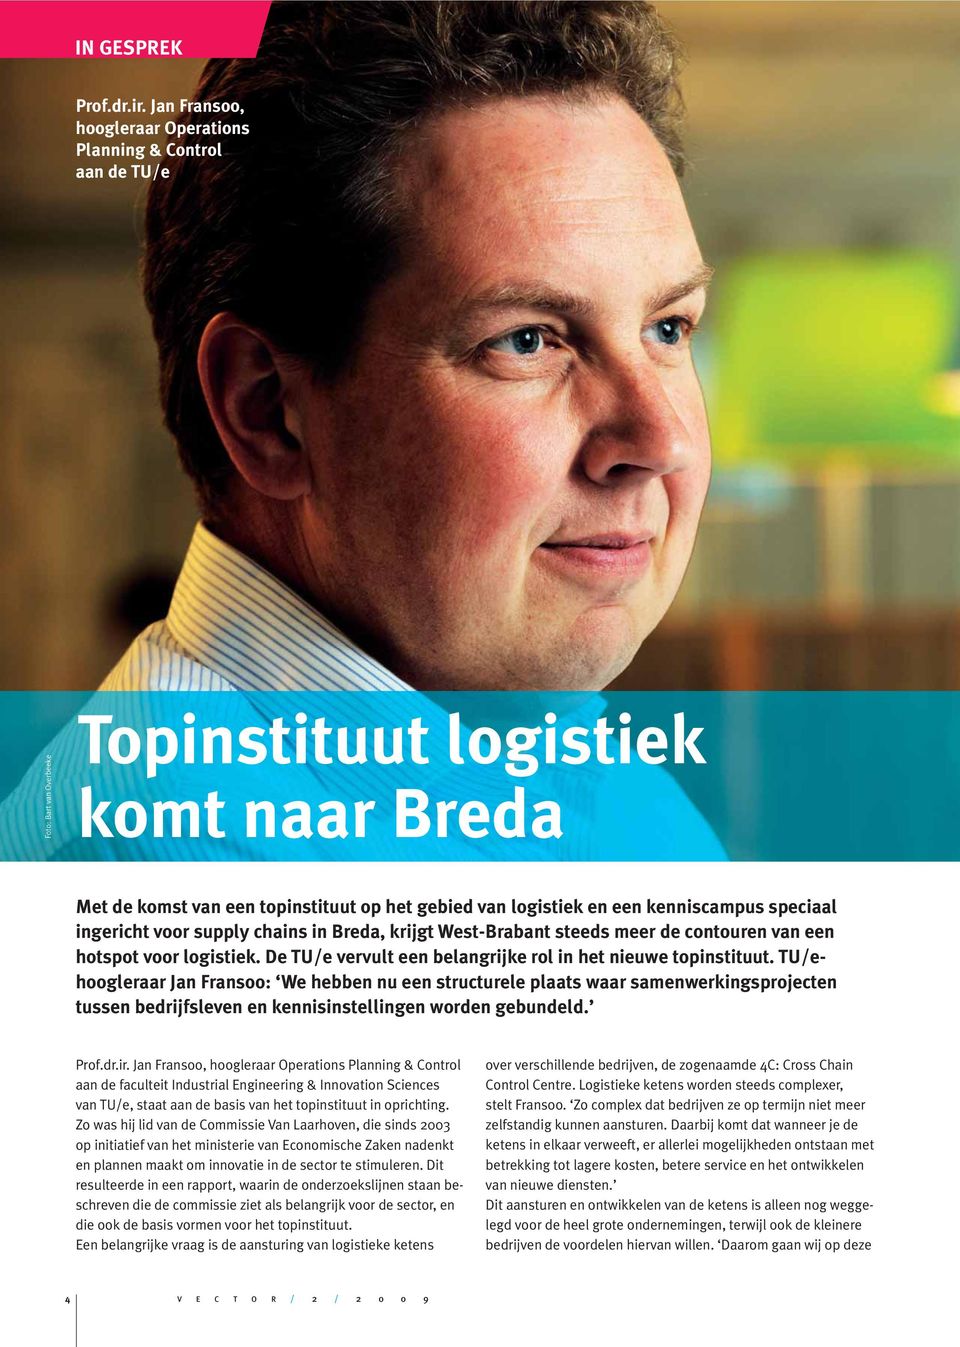 kenniscampus speciaal ingericht voor supply chains in Breda, krijgt West-Brabant steeds meer de contouren van een hotspot voor logistiek.